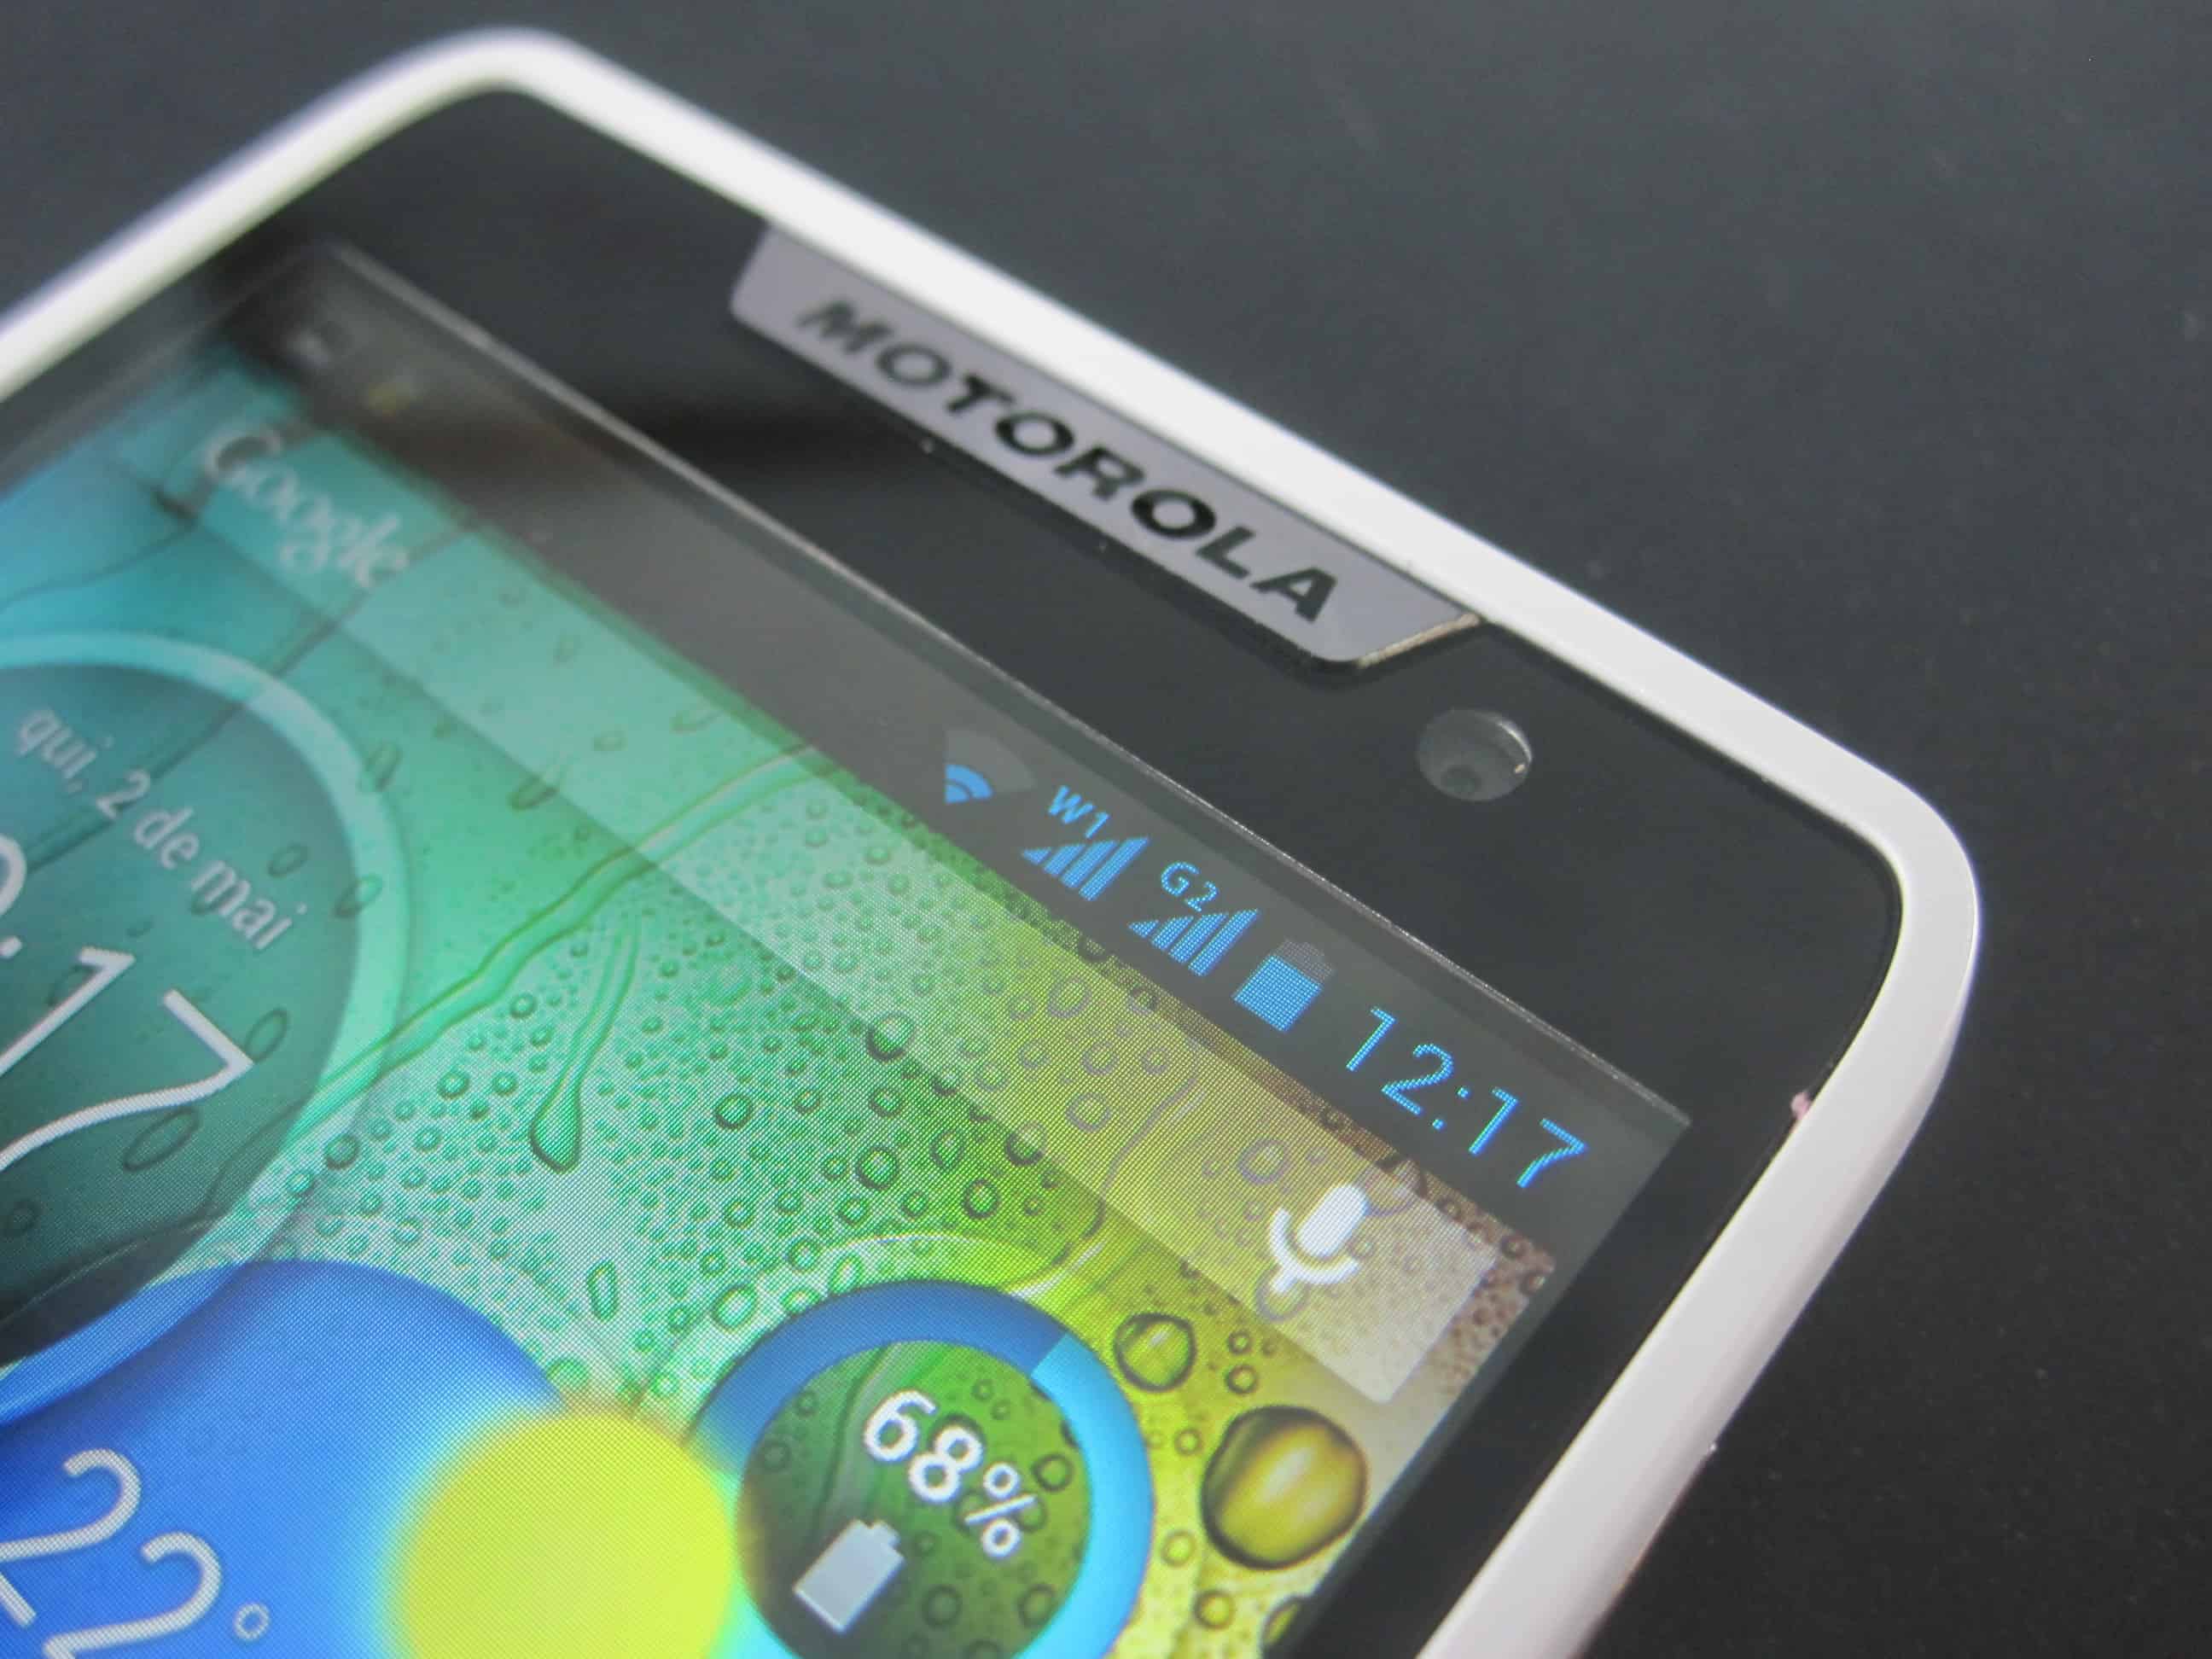 Review do Motorola RAZR D3 - Potência que cabe no bolso 7